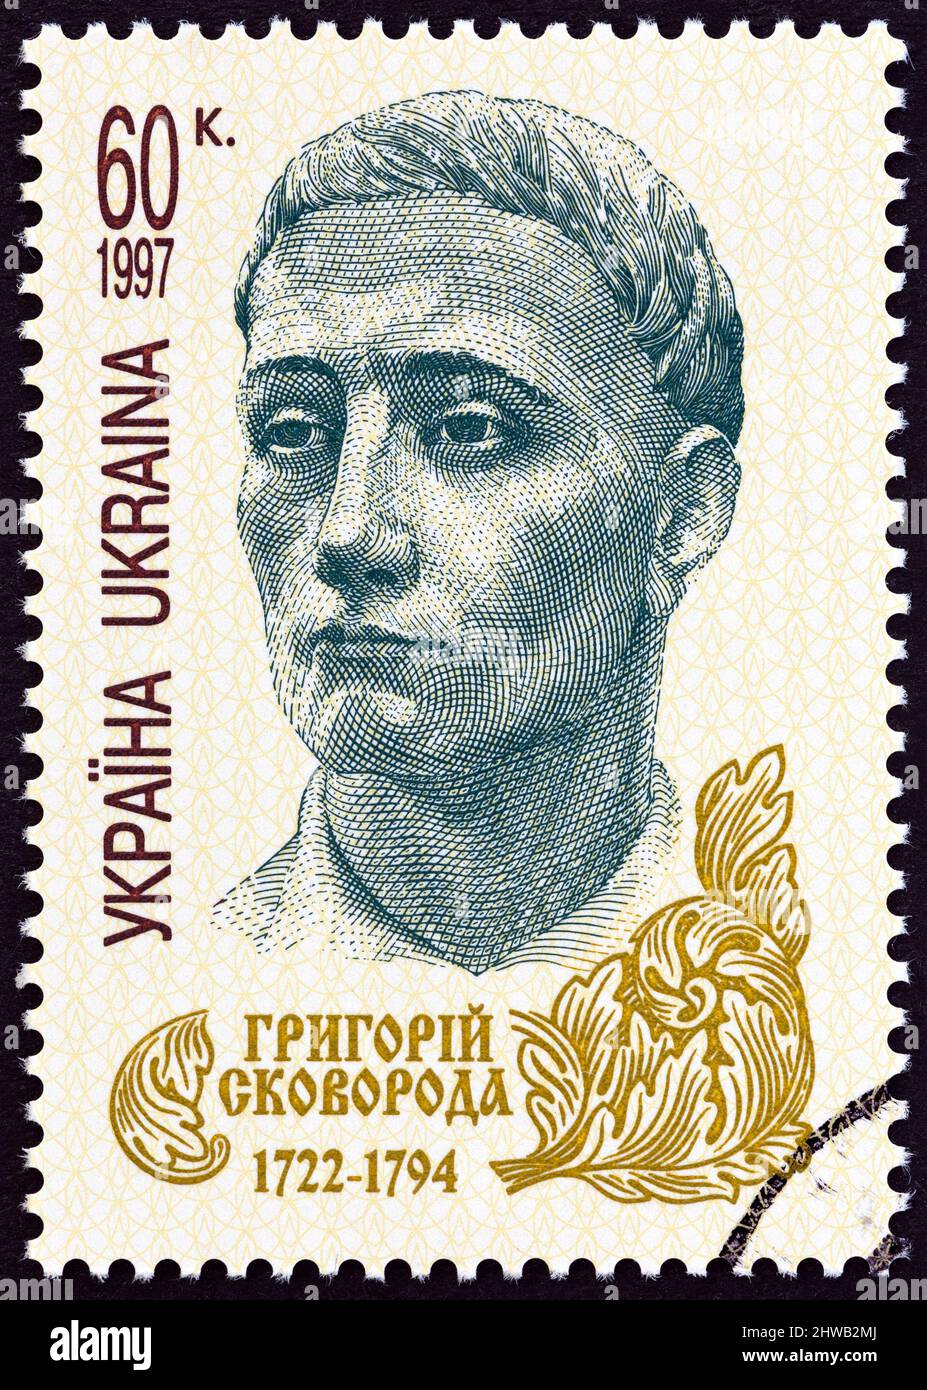 UKRAINE - UM 1997: Eine in der Ukraine gedruckte Briefmarke, die zum 275.. Jahrestag der Geburt von G.S.Skovoroda herausgegeben wurde, zeigt den Philosophen Gregory Skovoroda. Stockfoto